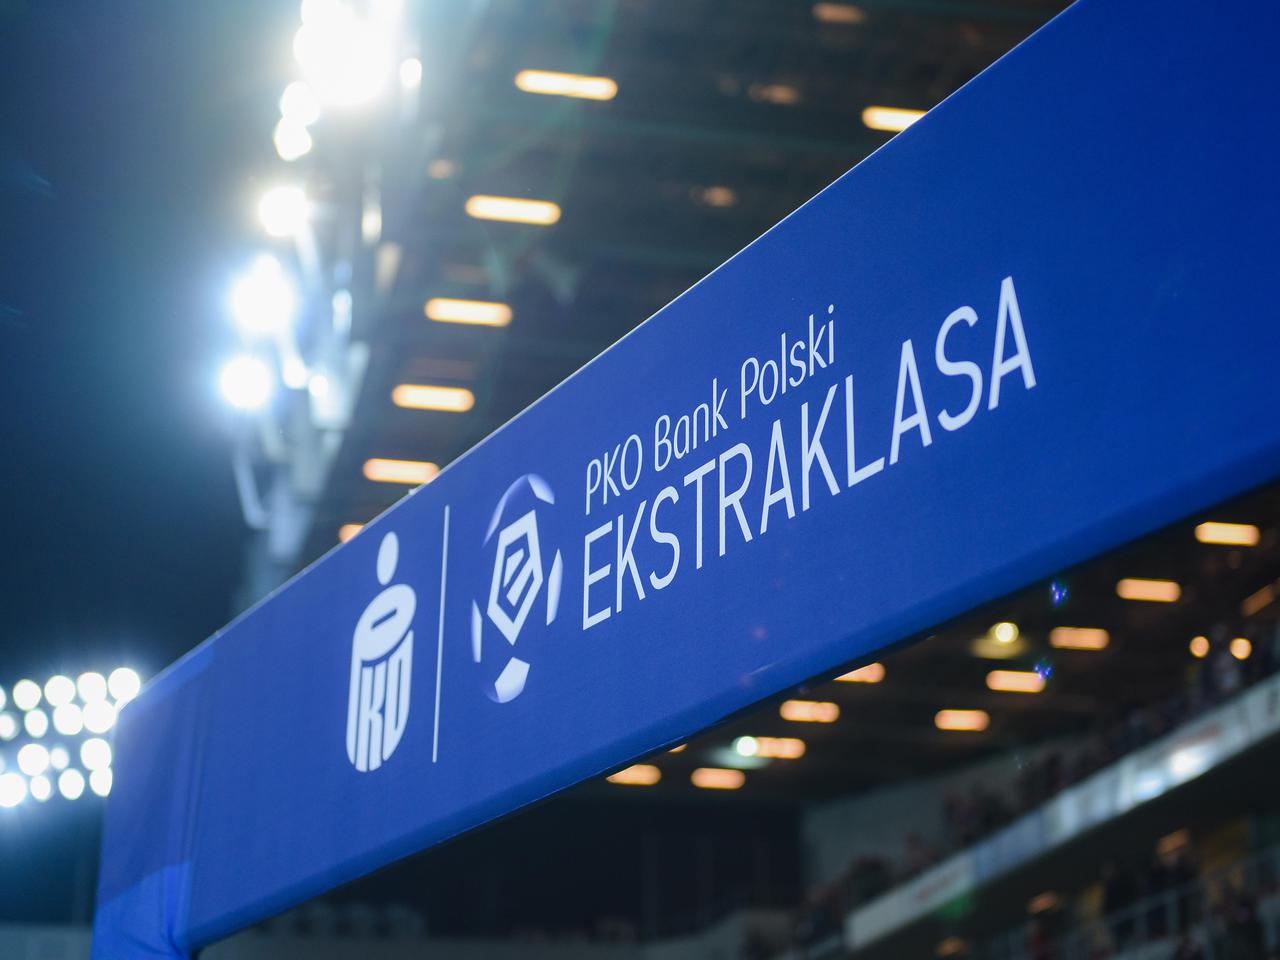 Startuje Ekstraklasa Raport! Ujawniamy pierwszych gości. Oglądaj nowy program Super Expressu o polskiej piłce 